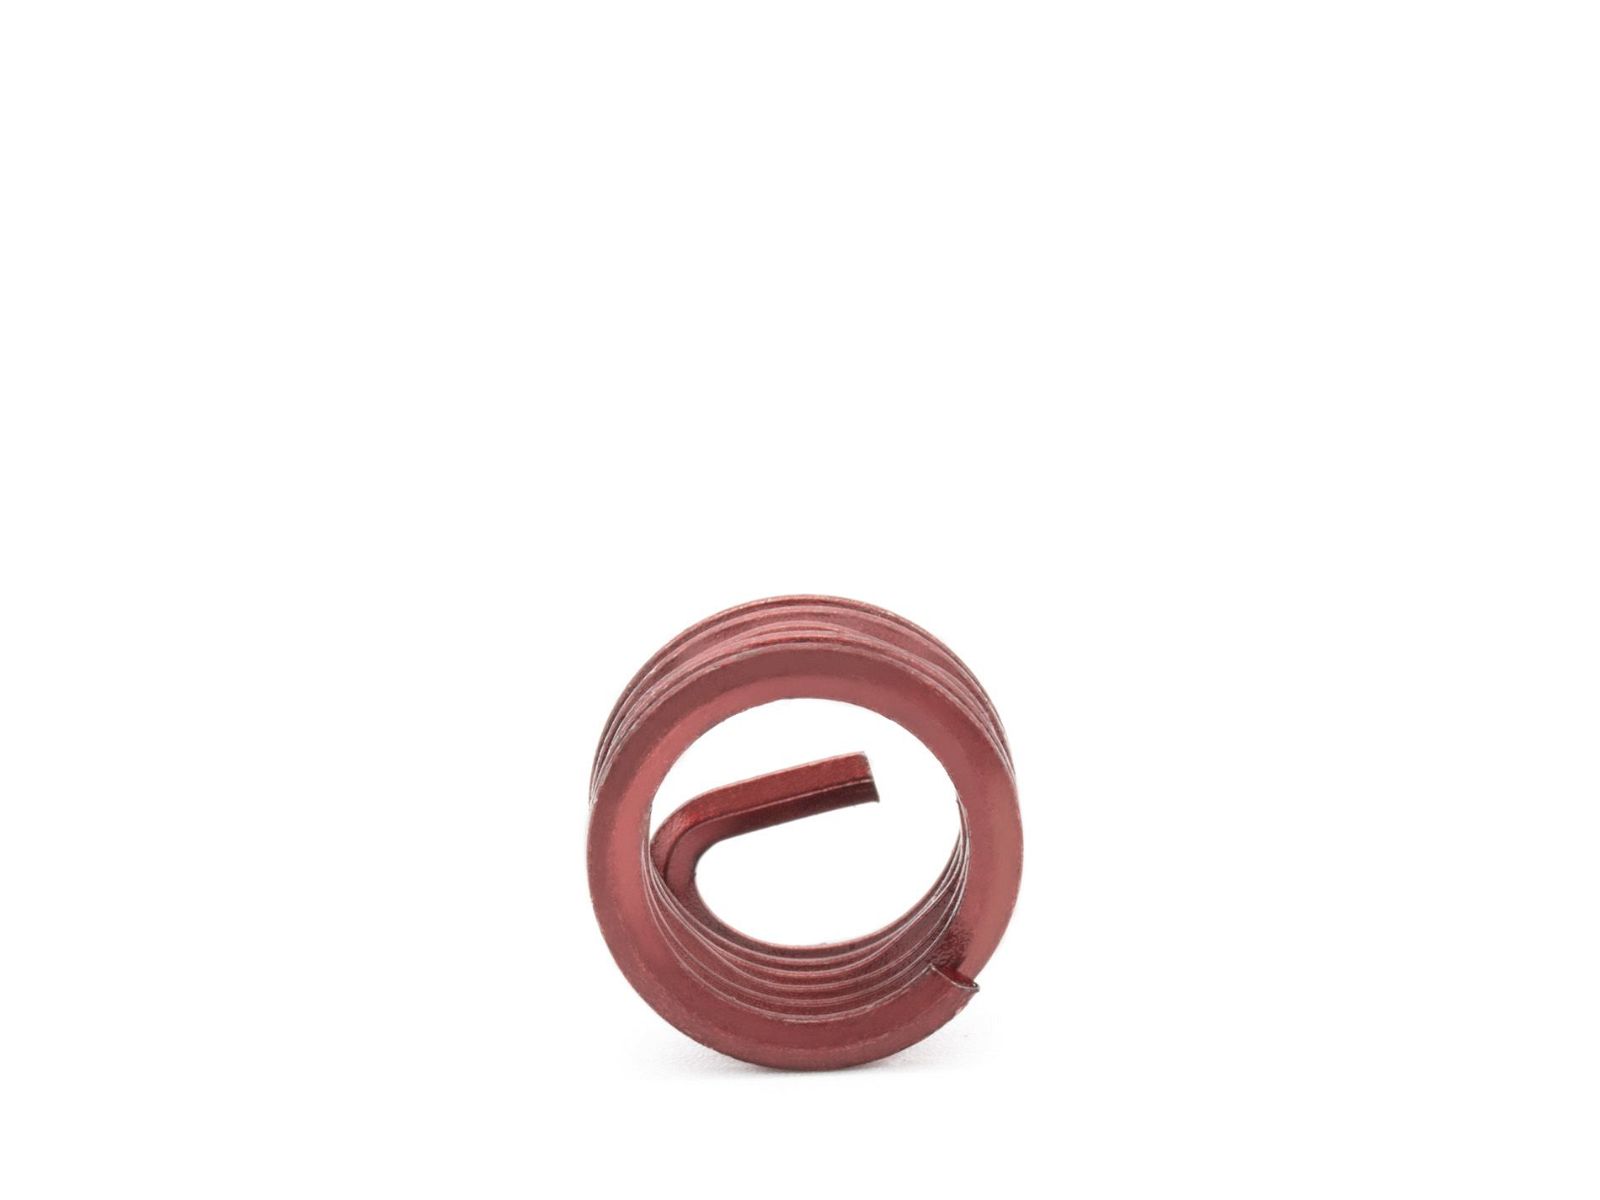 BaerCoil Wire Thread Inserts UNF 5/16 x 24 - 1.0 D (7.94 mm) - screw grip (screw locking) - 100 pcs.